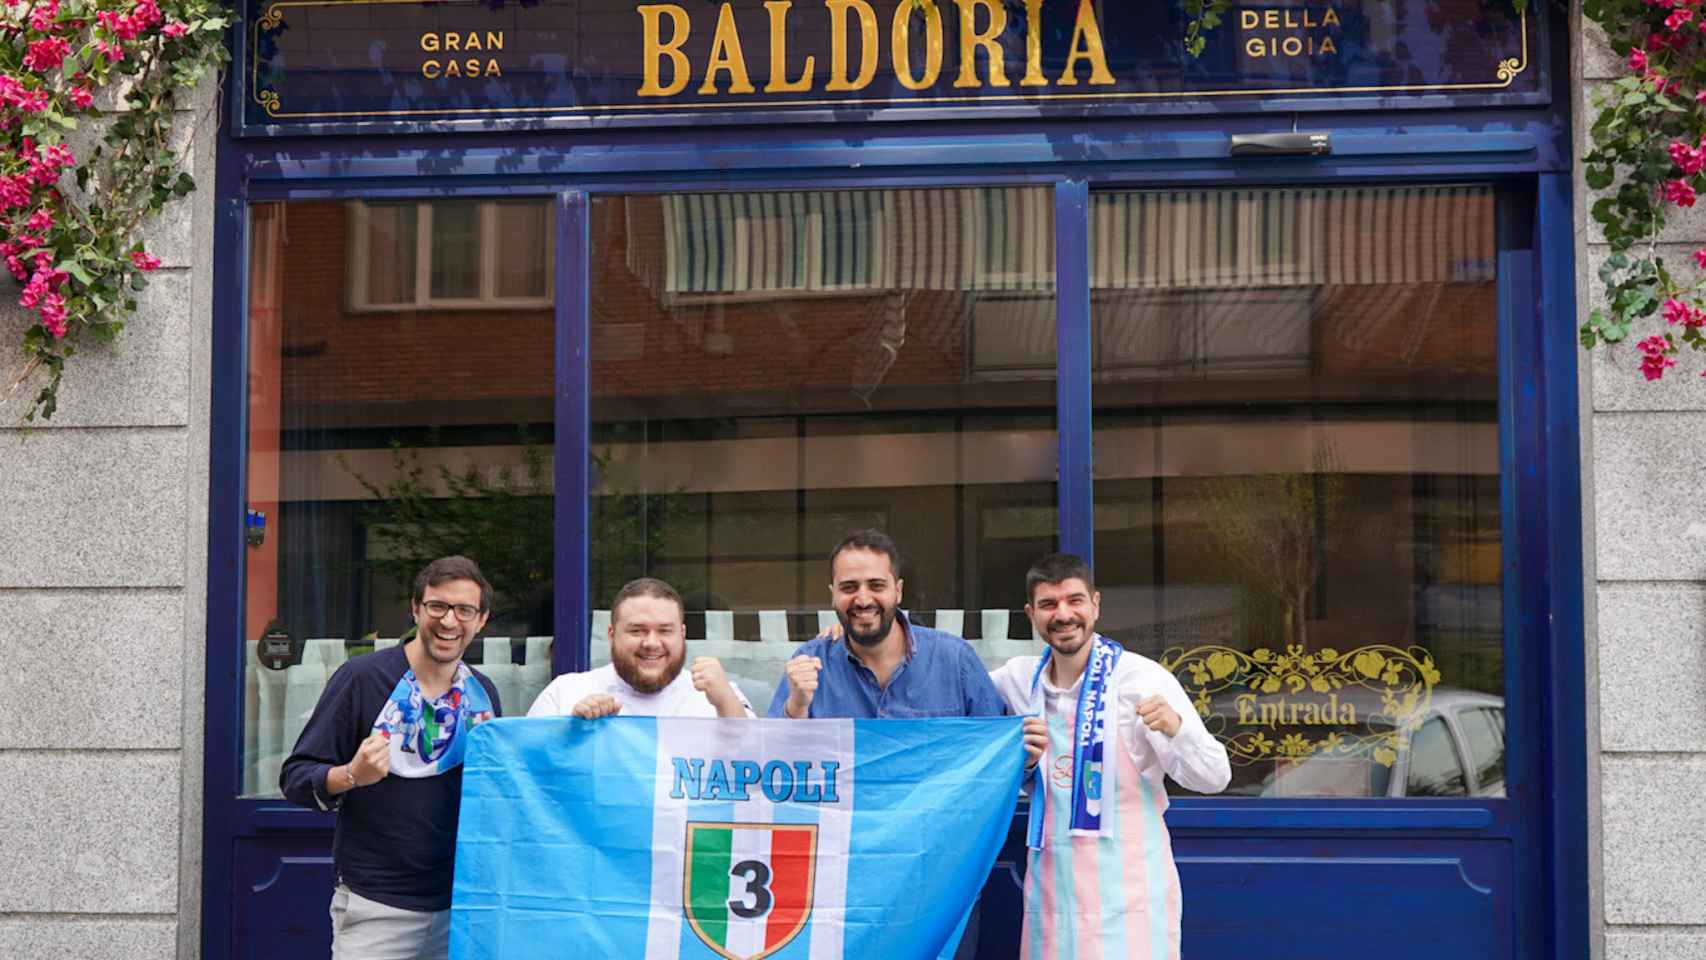 El equipo de Baldoria celebrando la vitoria del Nápoles.